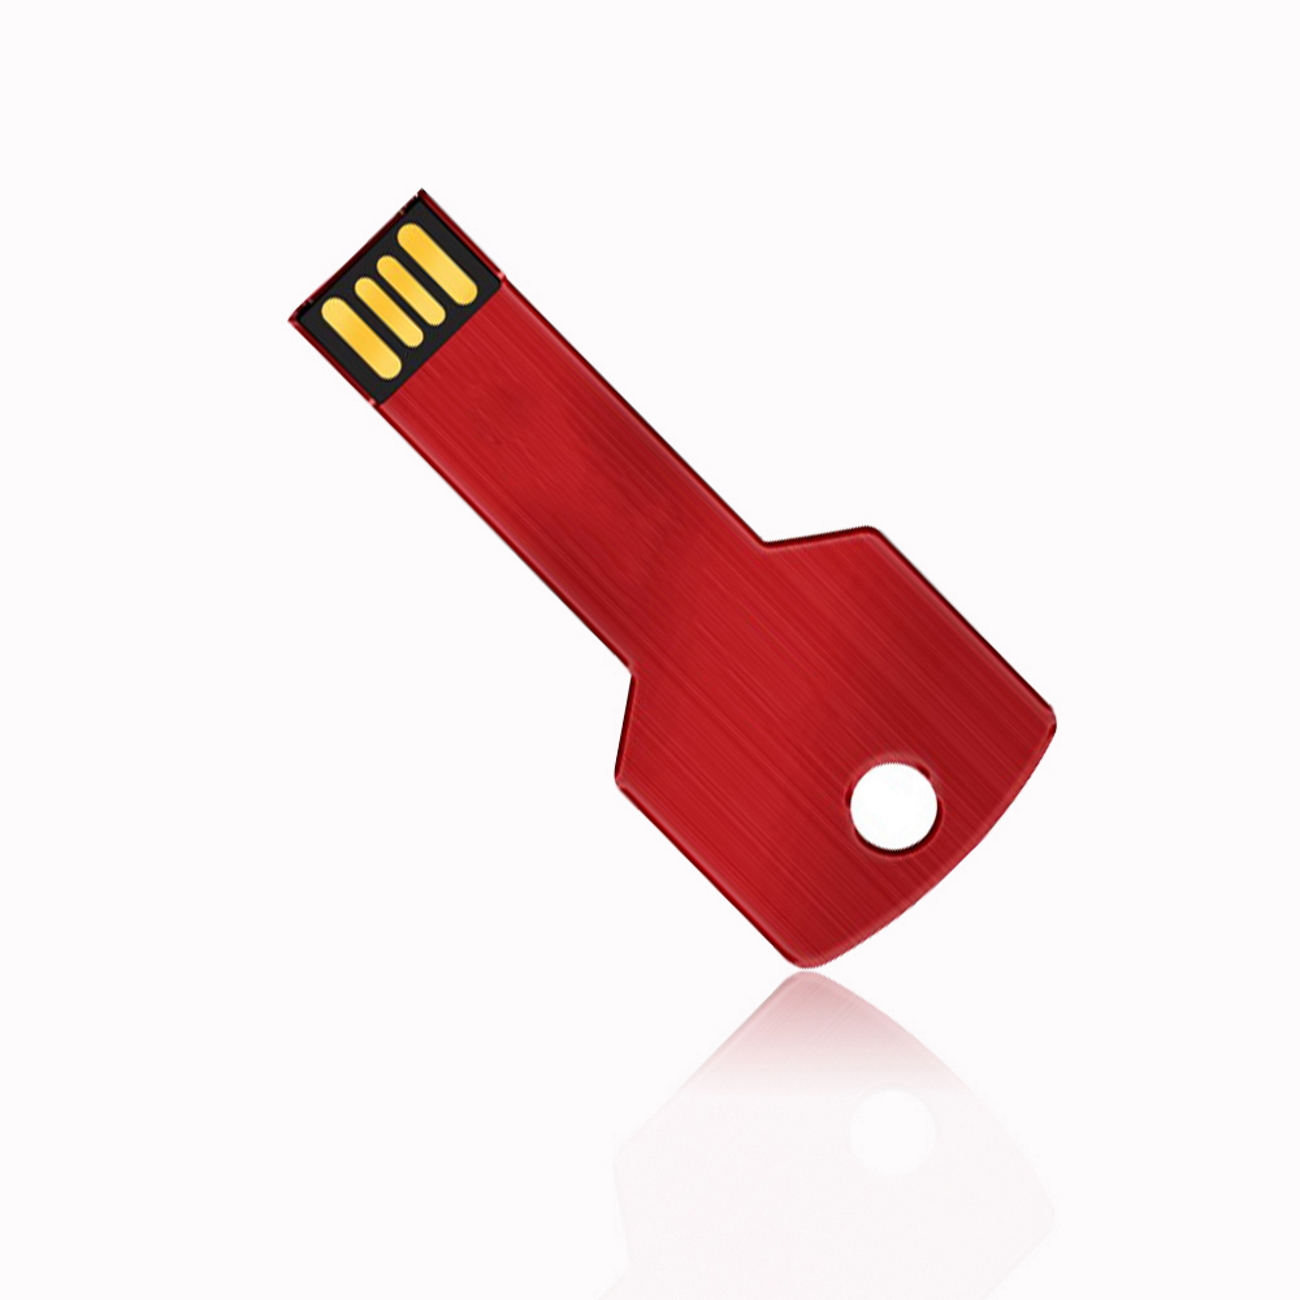 64GB GB) 64 GERMANY Key USB Schwarz (Rot, USB-Stick